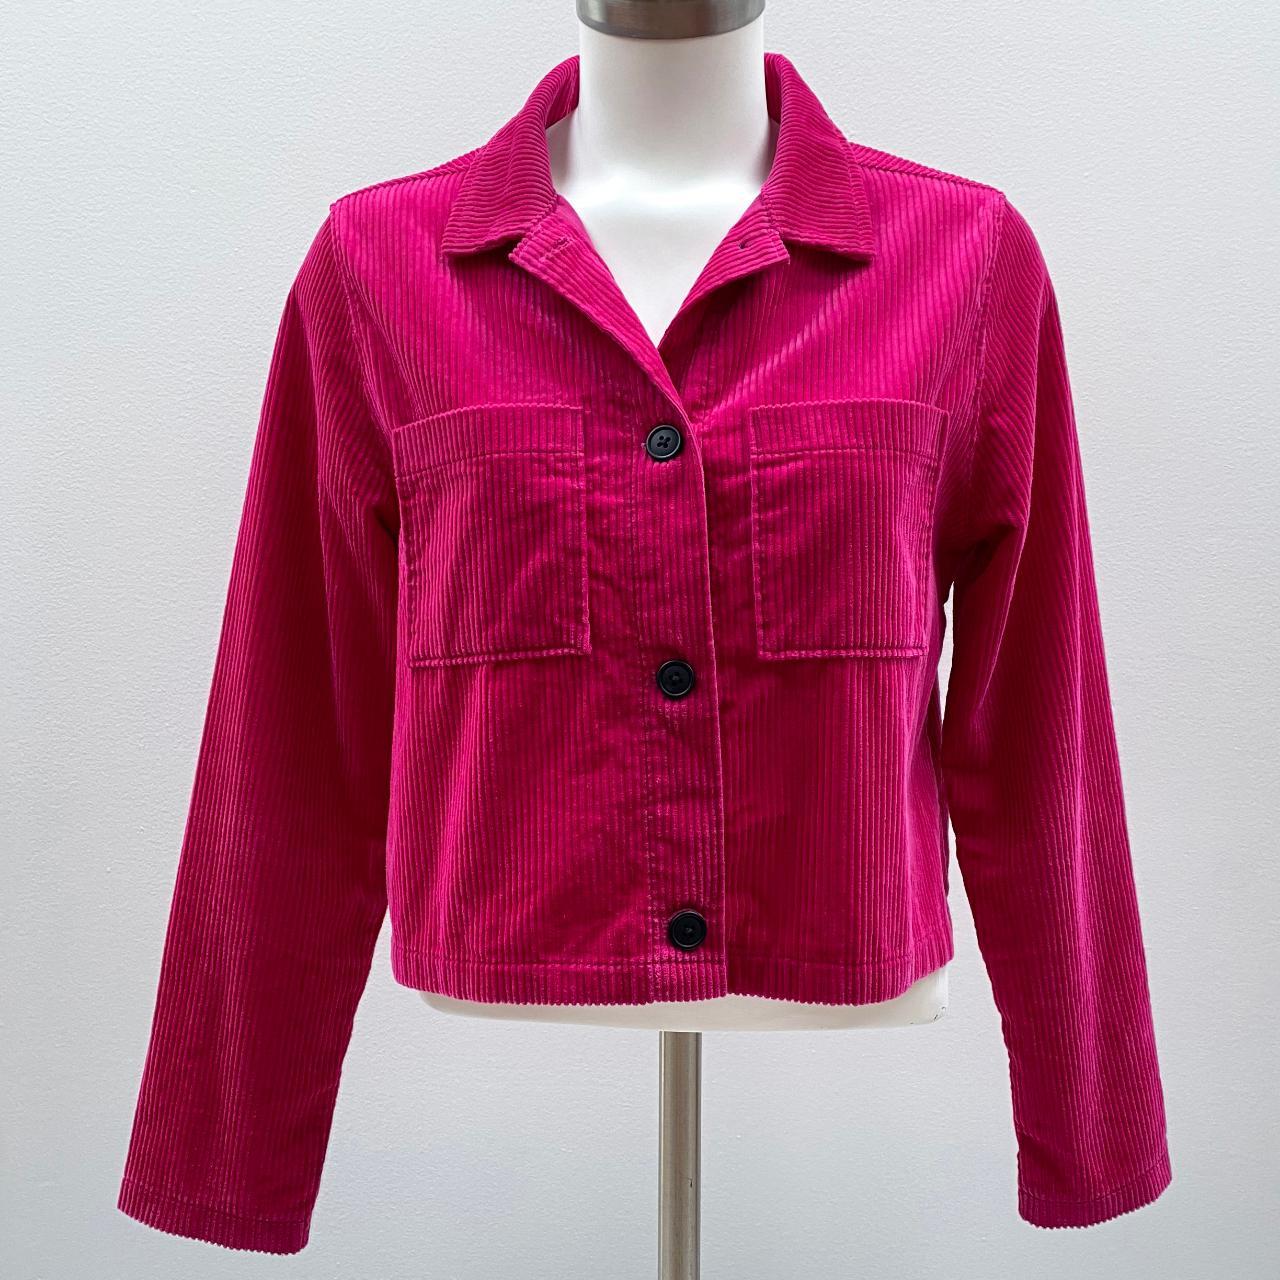 Product Image 3 - Fuchsia velvet jacket size XS/S
Hot